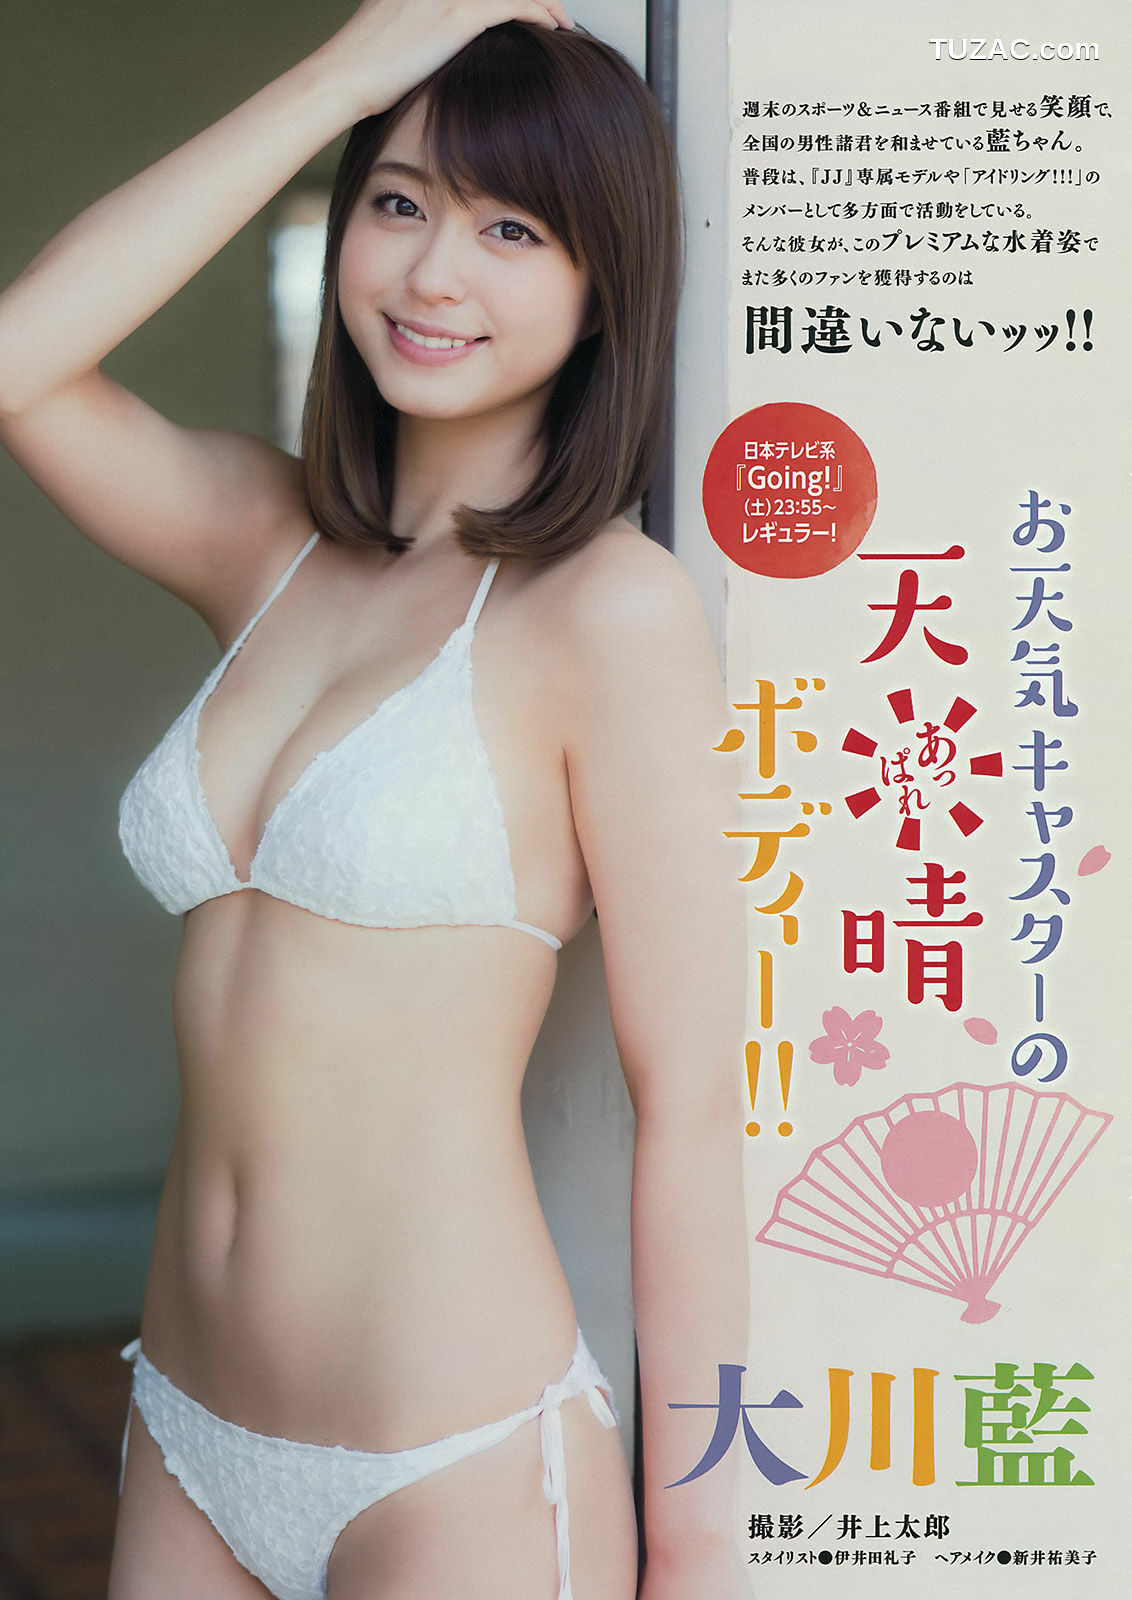 Young Magazine杂志写真_ 大川藍 田野優花 村山彩希 2015年No.31 写真杂志[12P]